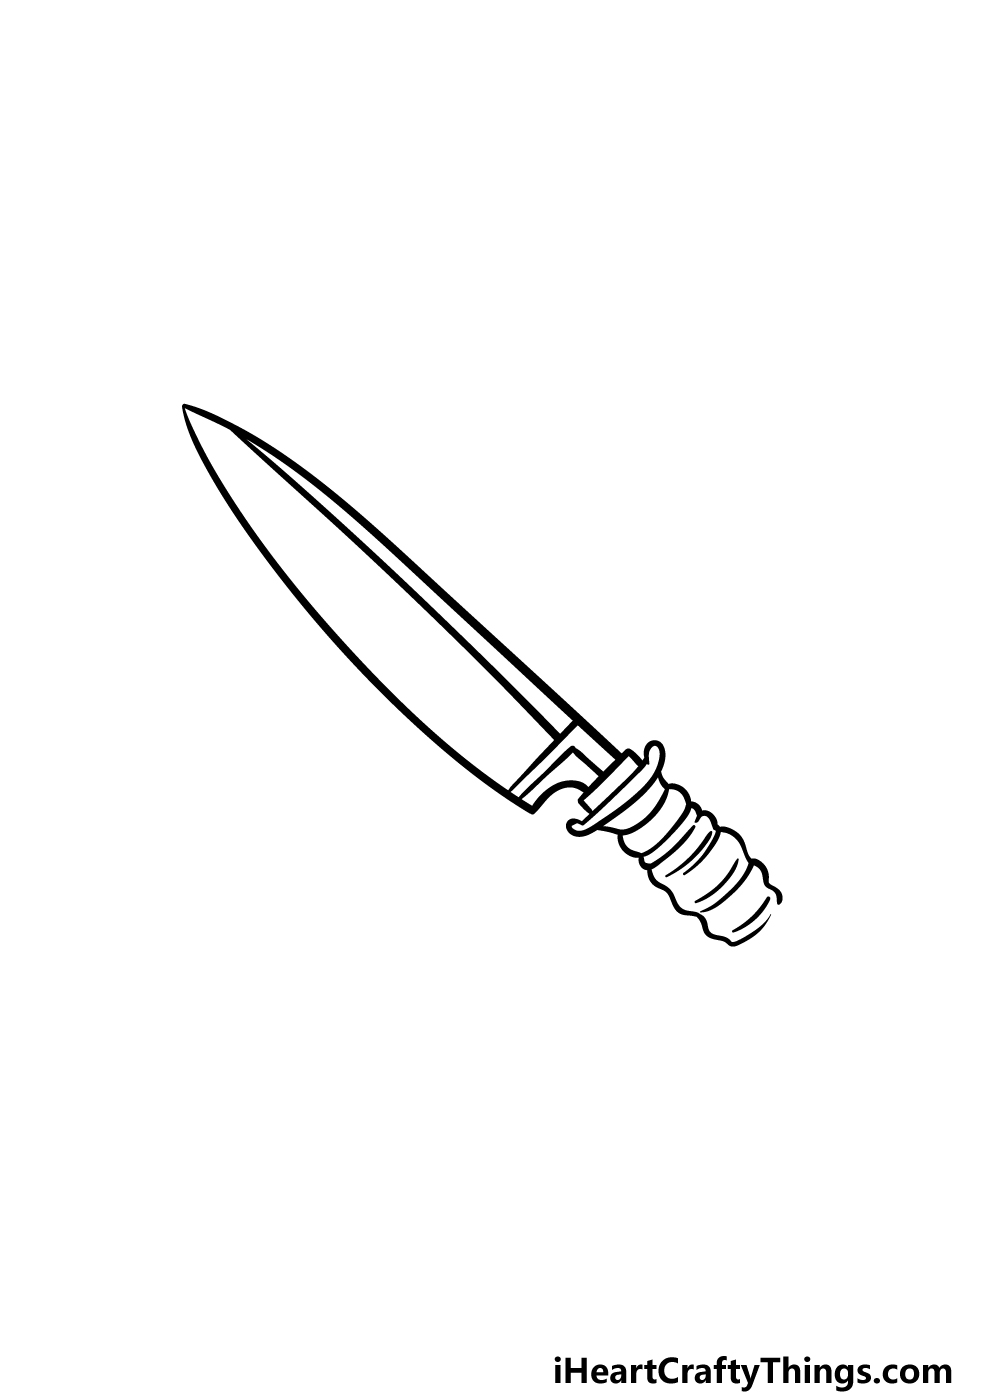 4 113 - Hướng dẫn cách vẽ con dao đơn giản với 6 bước cơ bản